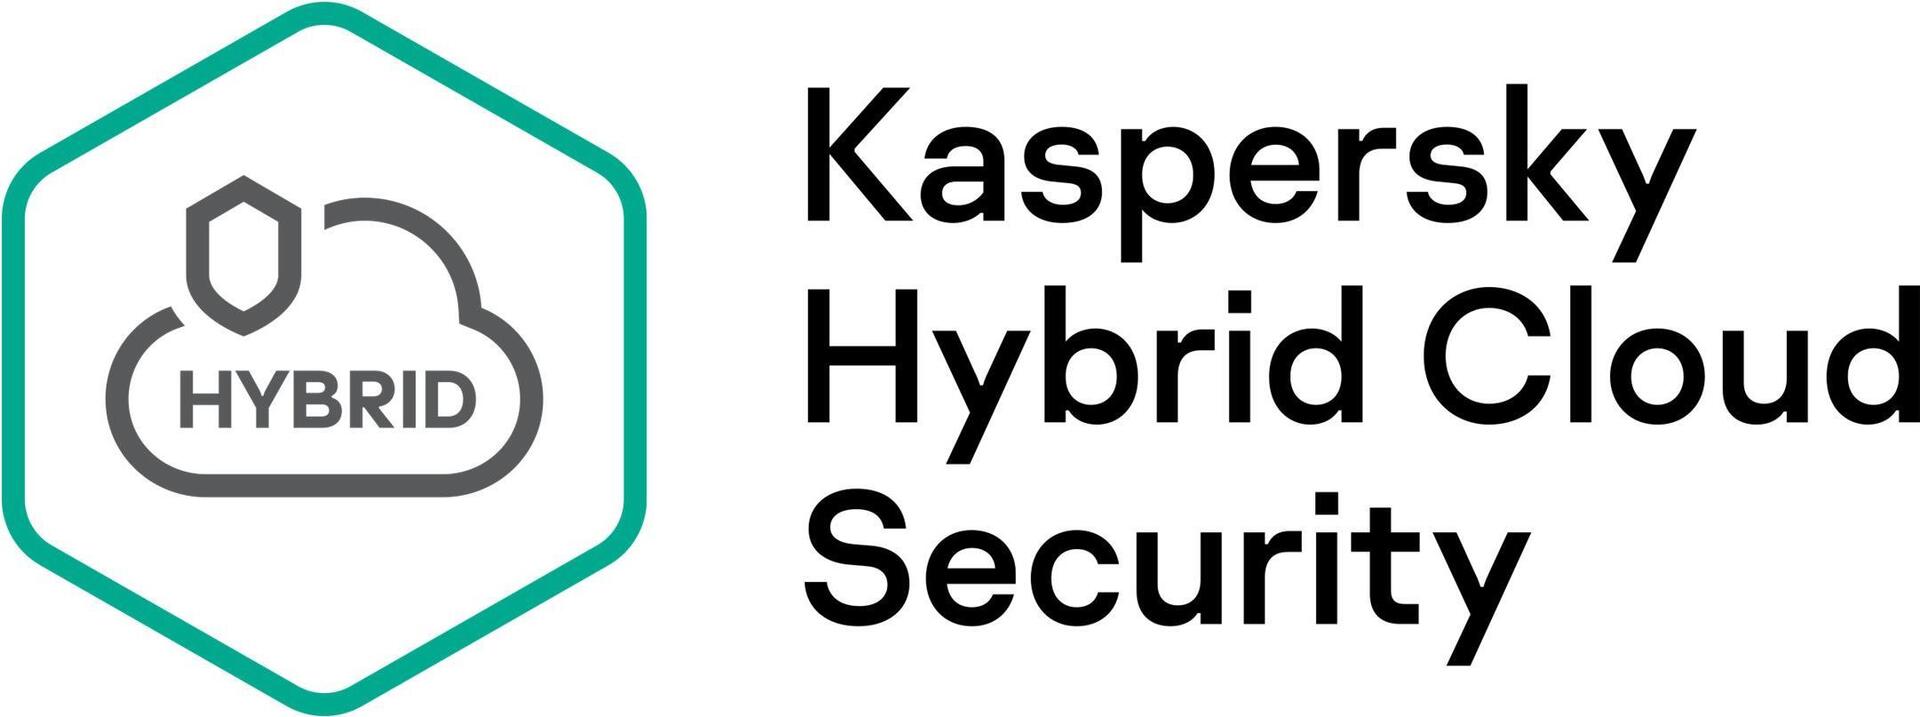 Kaspersky Hybrid Cloud Security Desktop (KL4155XAST8)